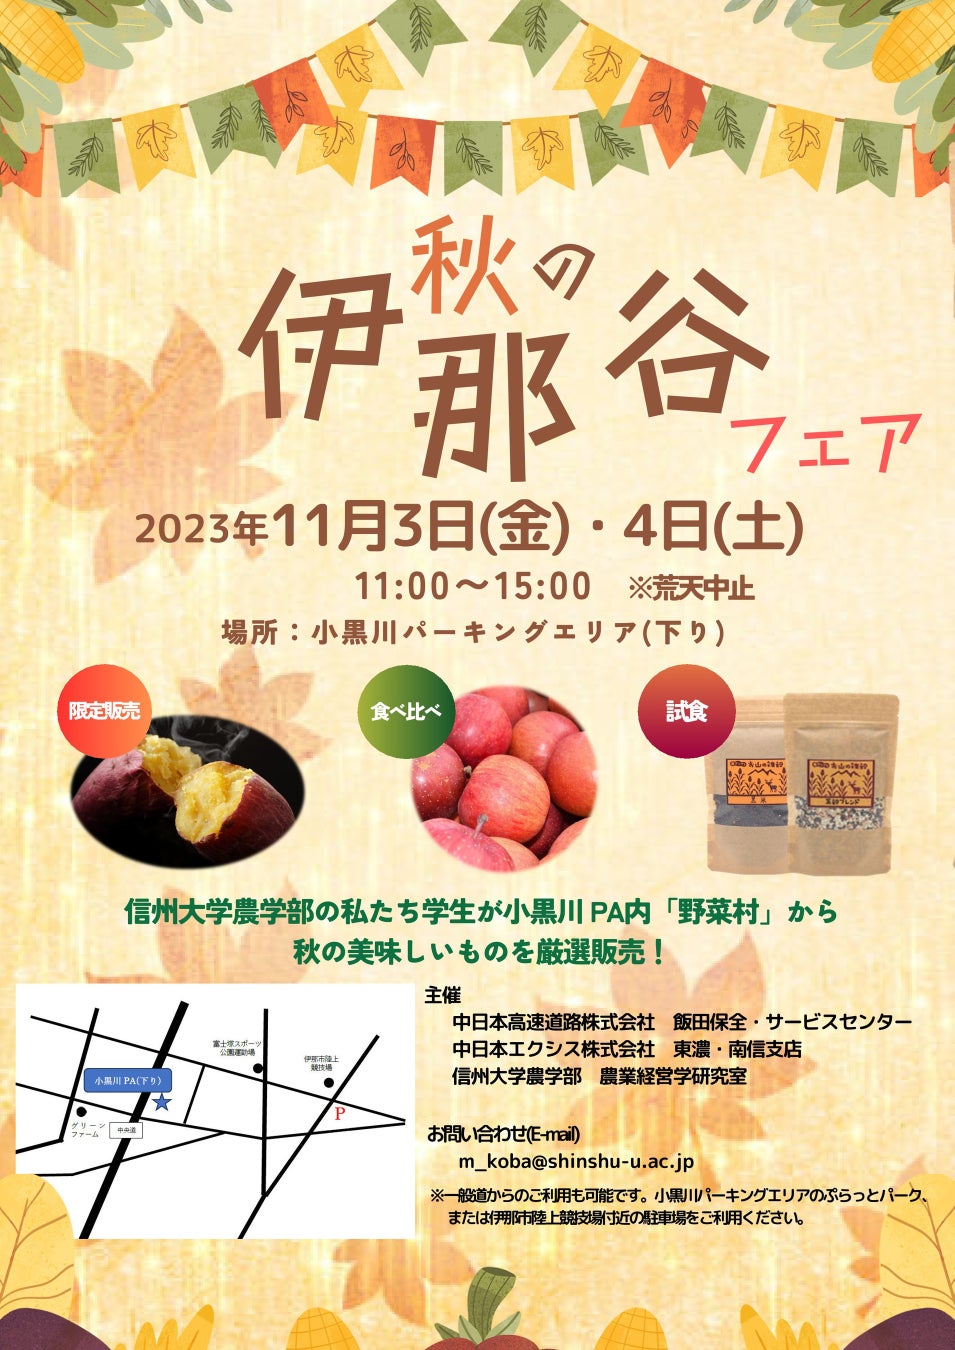 E19 中央道 小黒川PA（下り）で地域連携イベント「秋の伊那谷フェア」を開催します